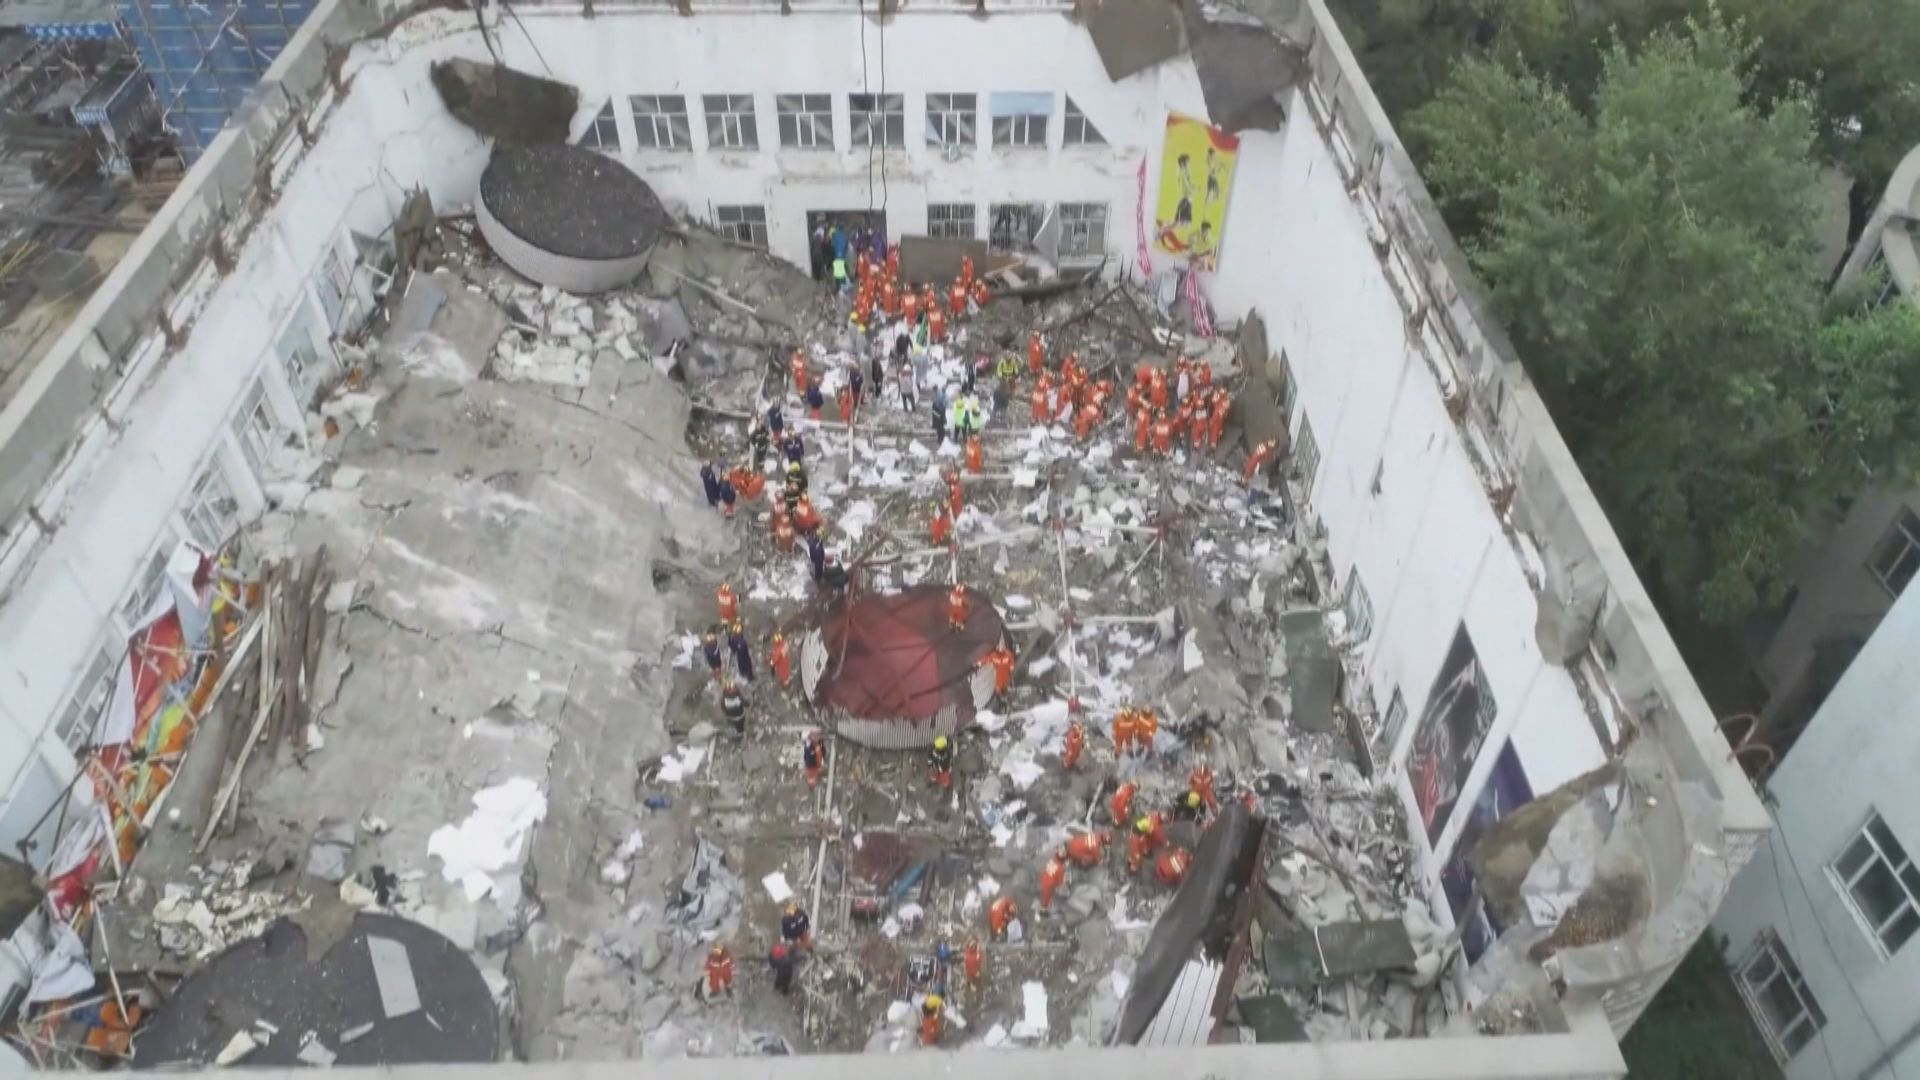 齊齊哈爾中學體育館倒塌事故 當局建議向51人追責